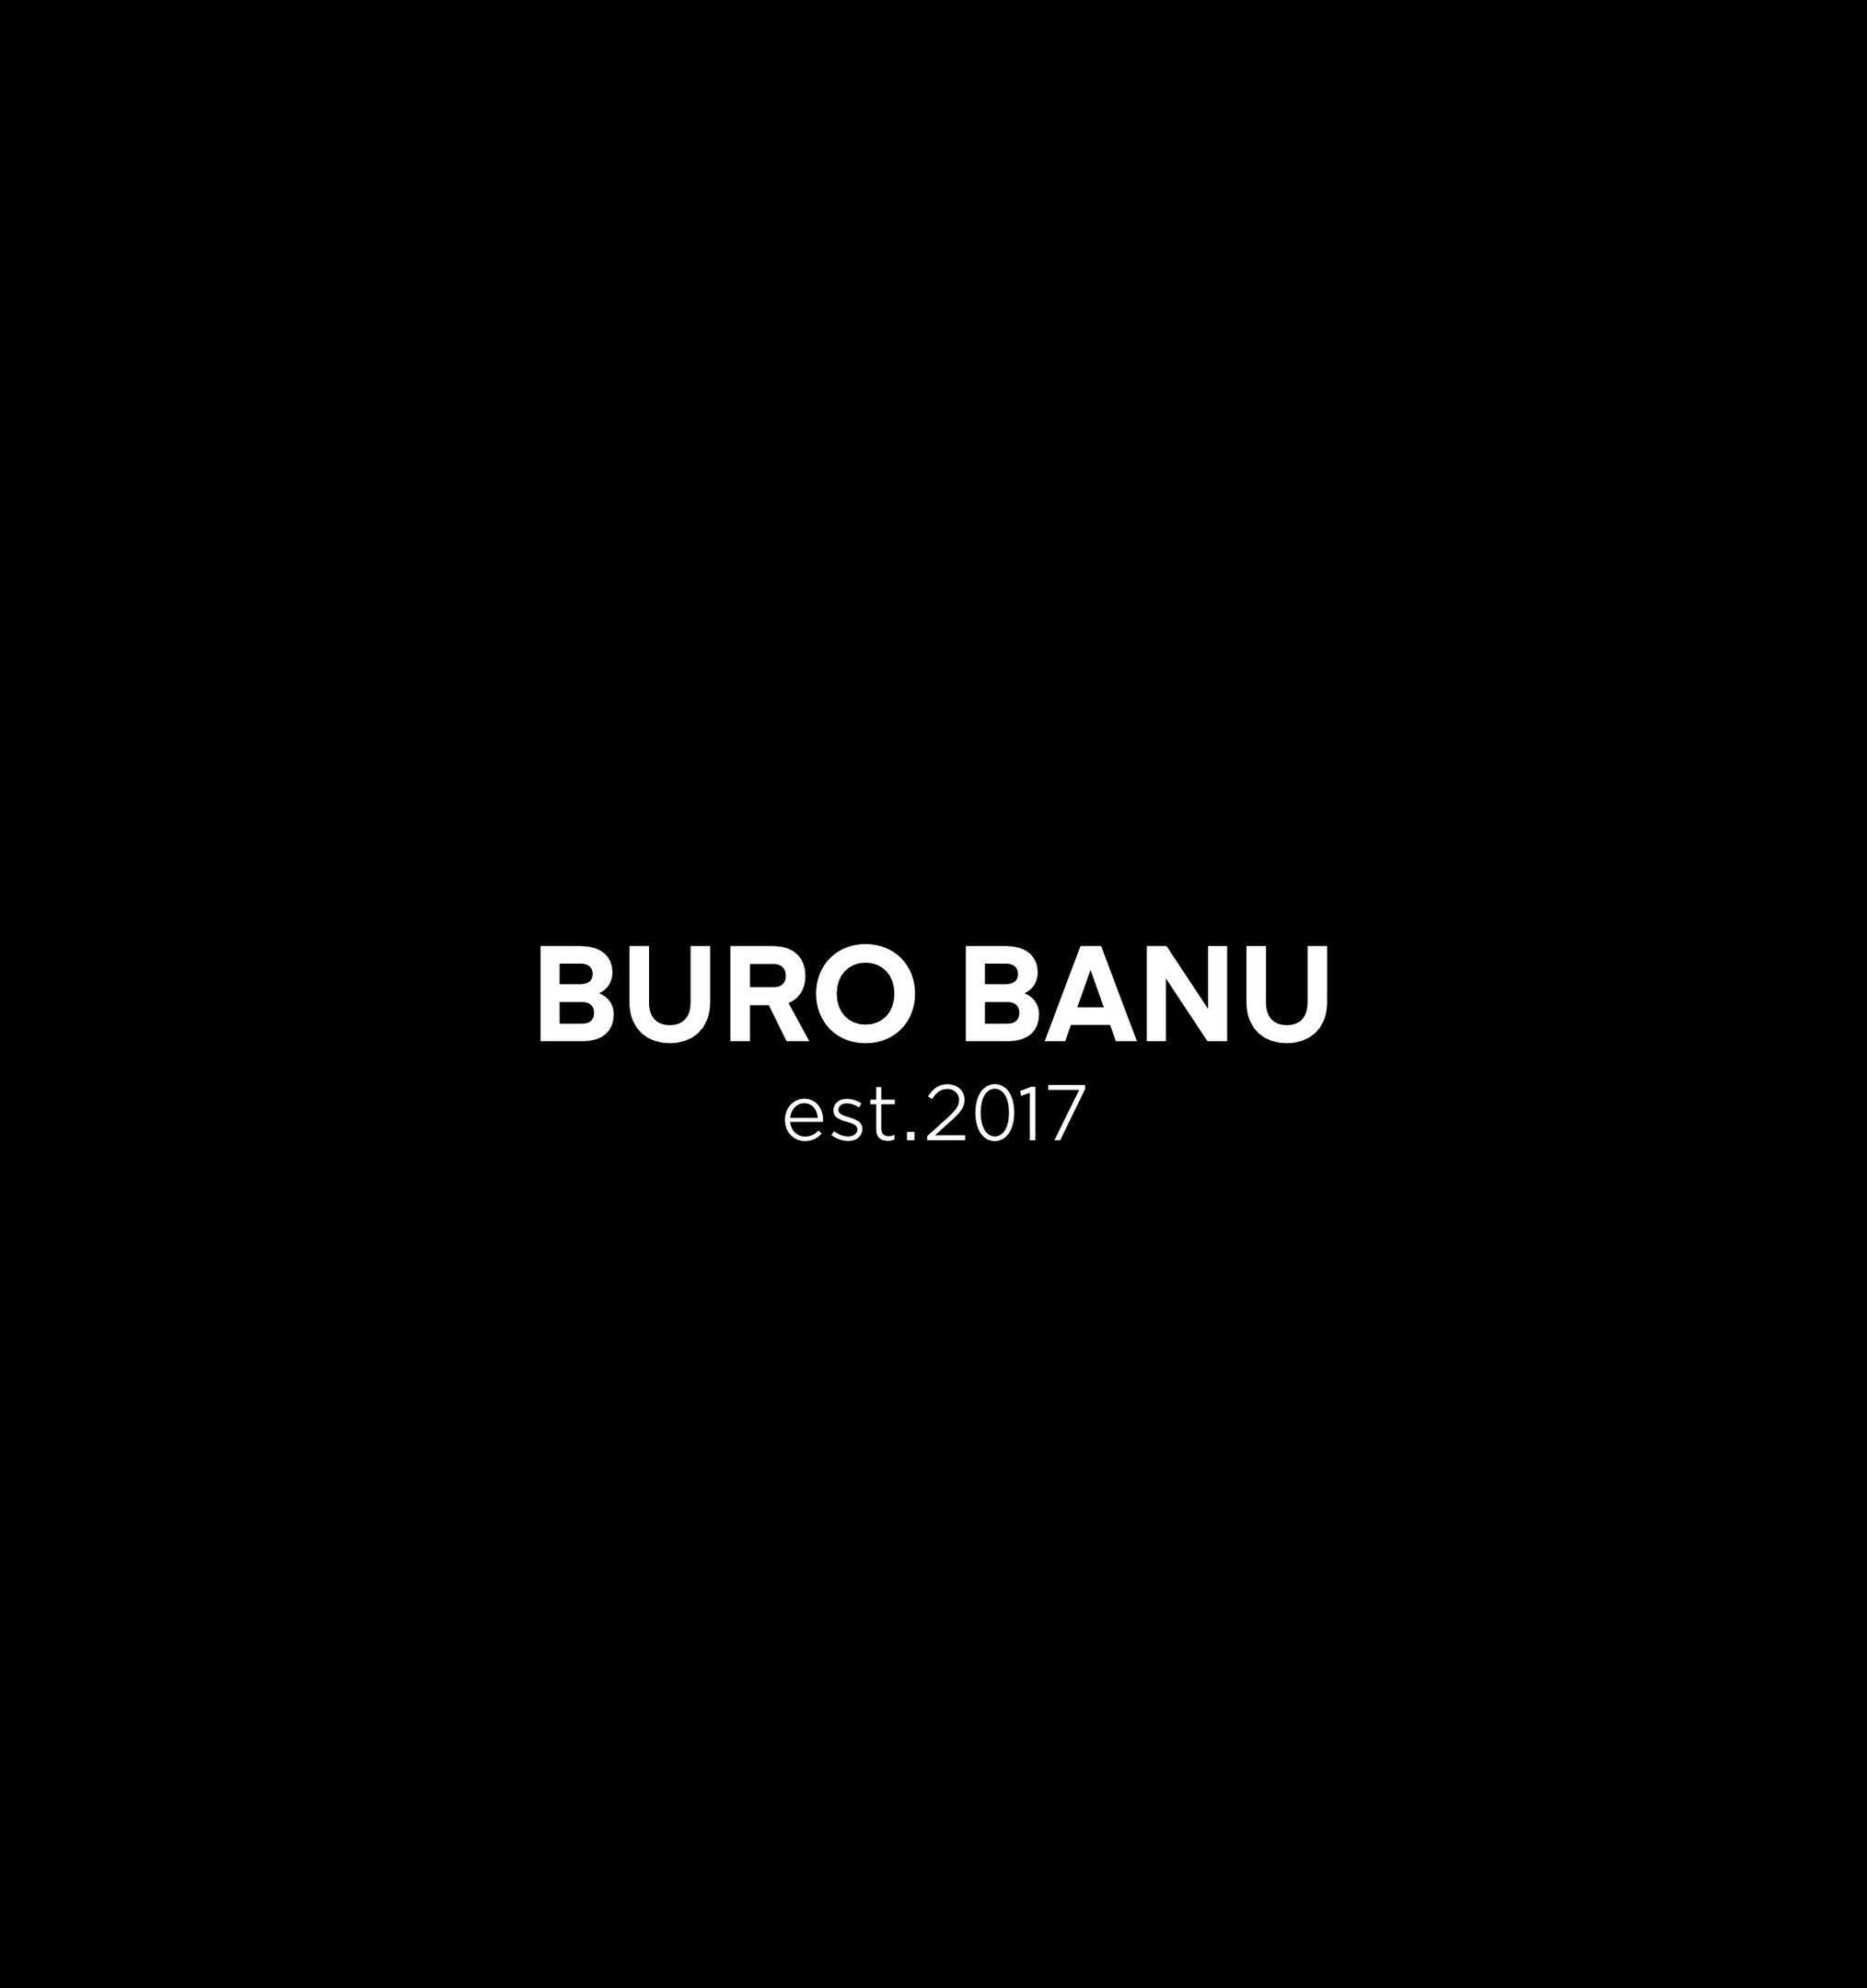 BURO BANU